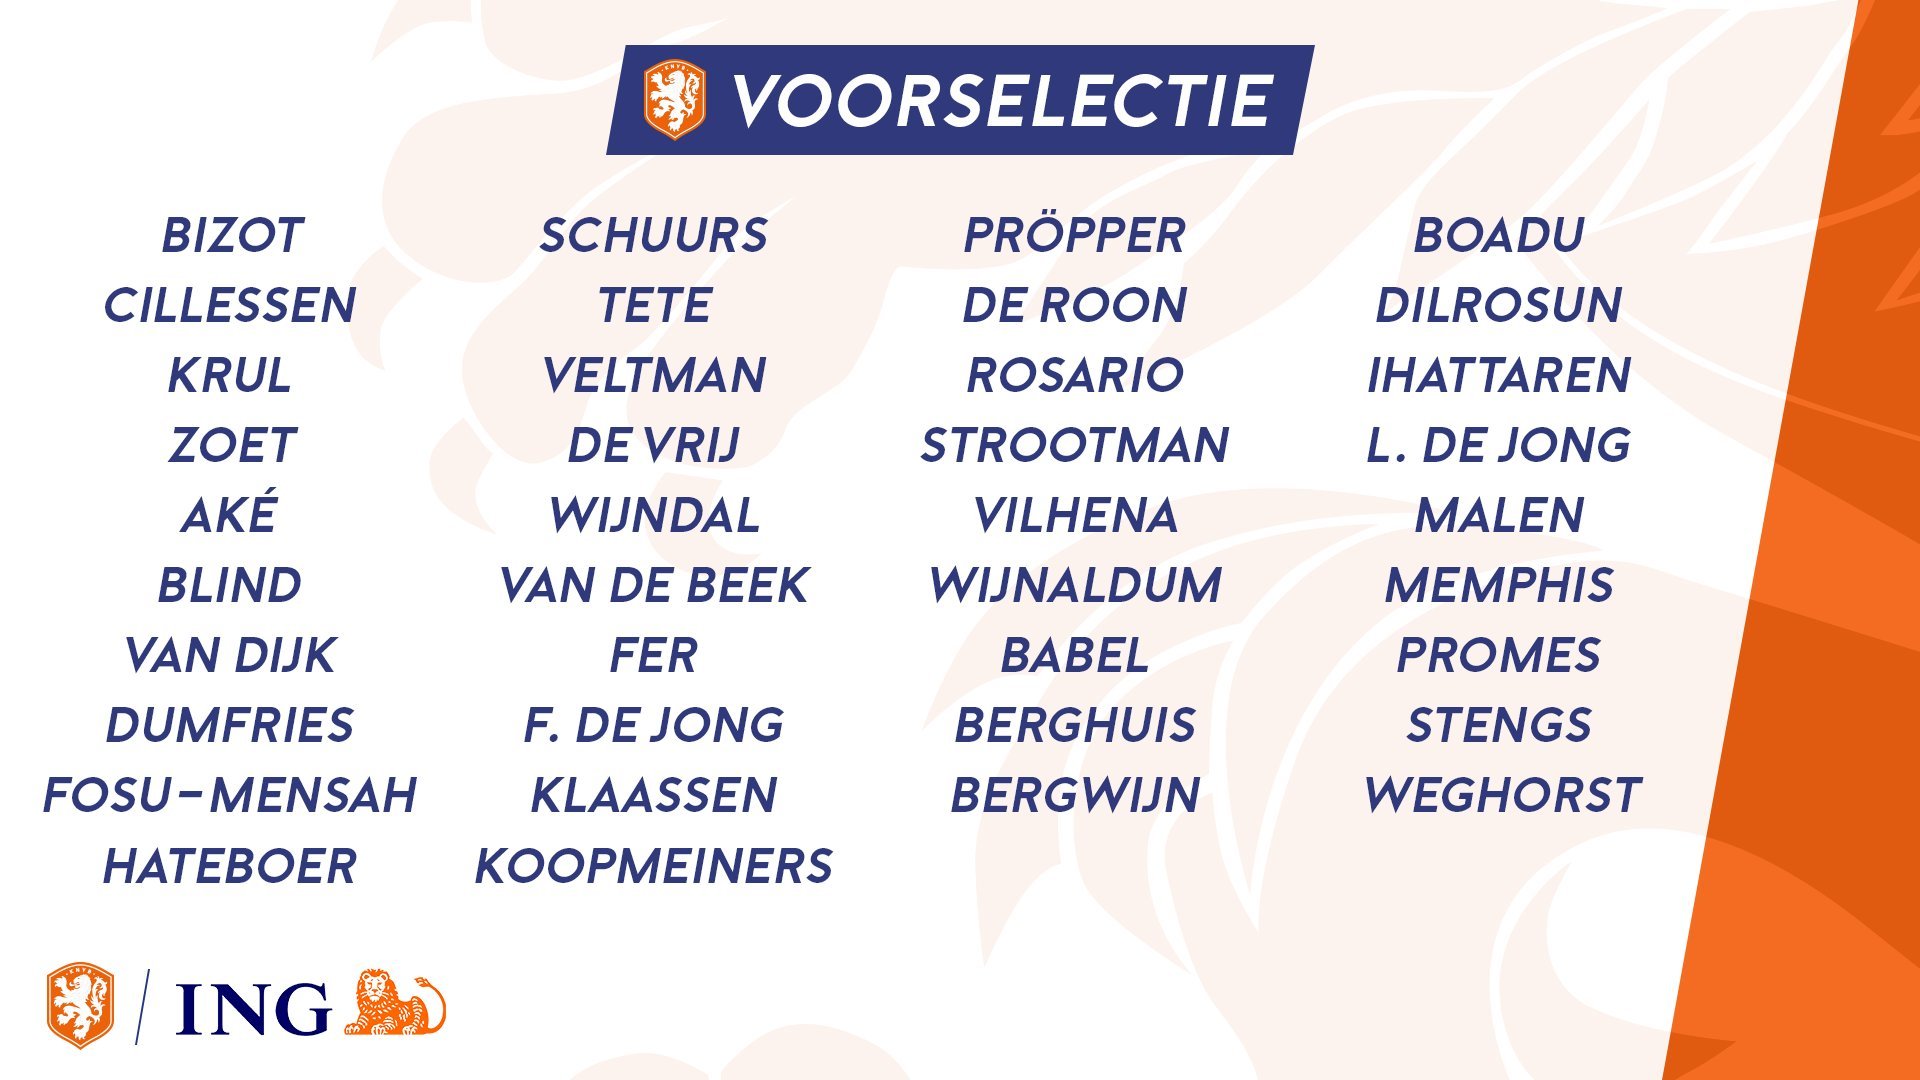 为备战10月份的欧国联比赛,荷兰国家队公布了一份最新的38人初选名单